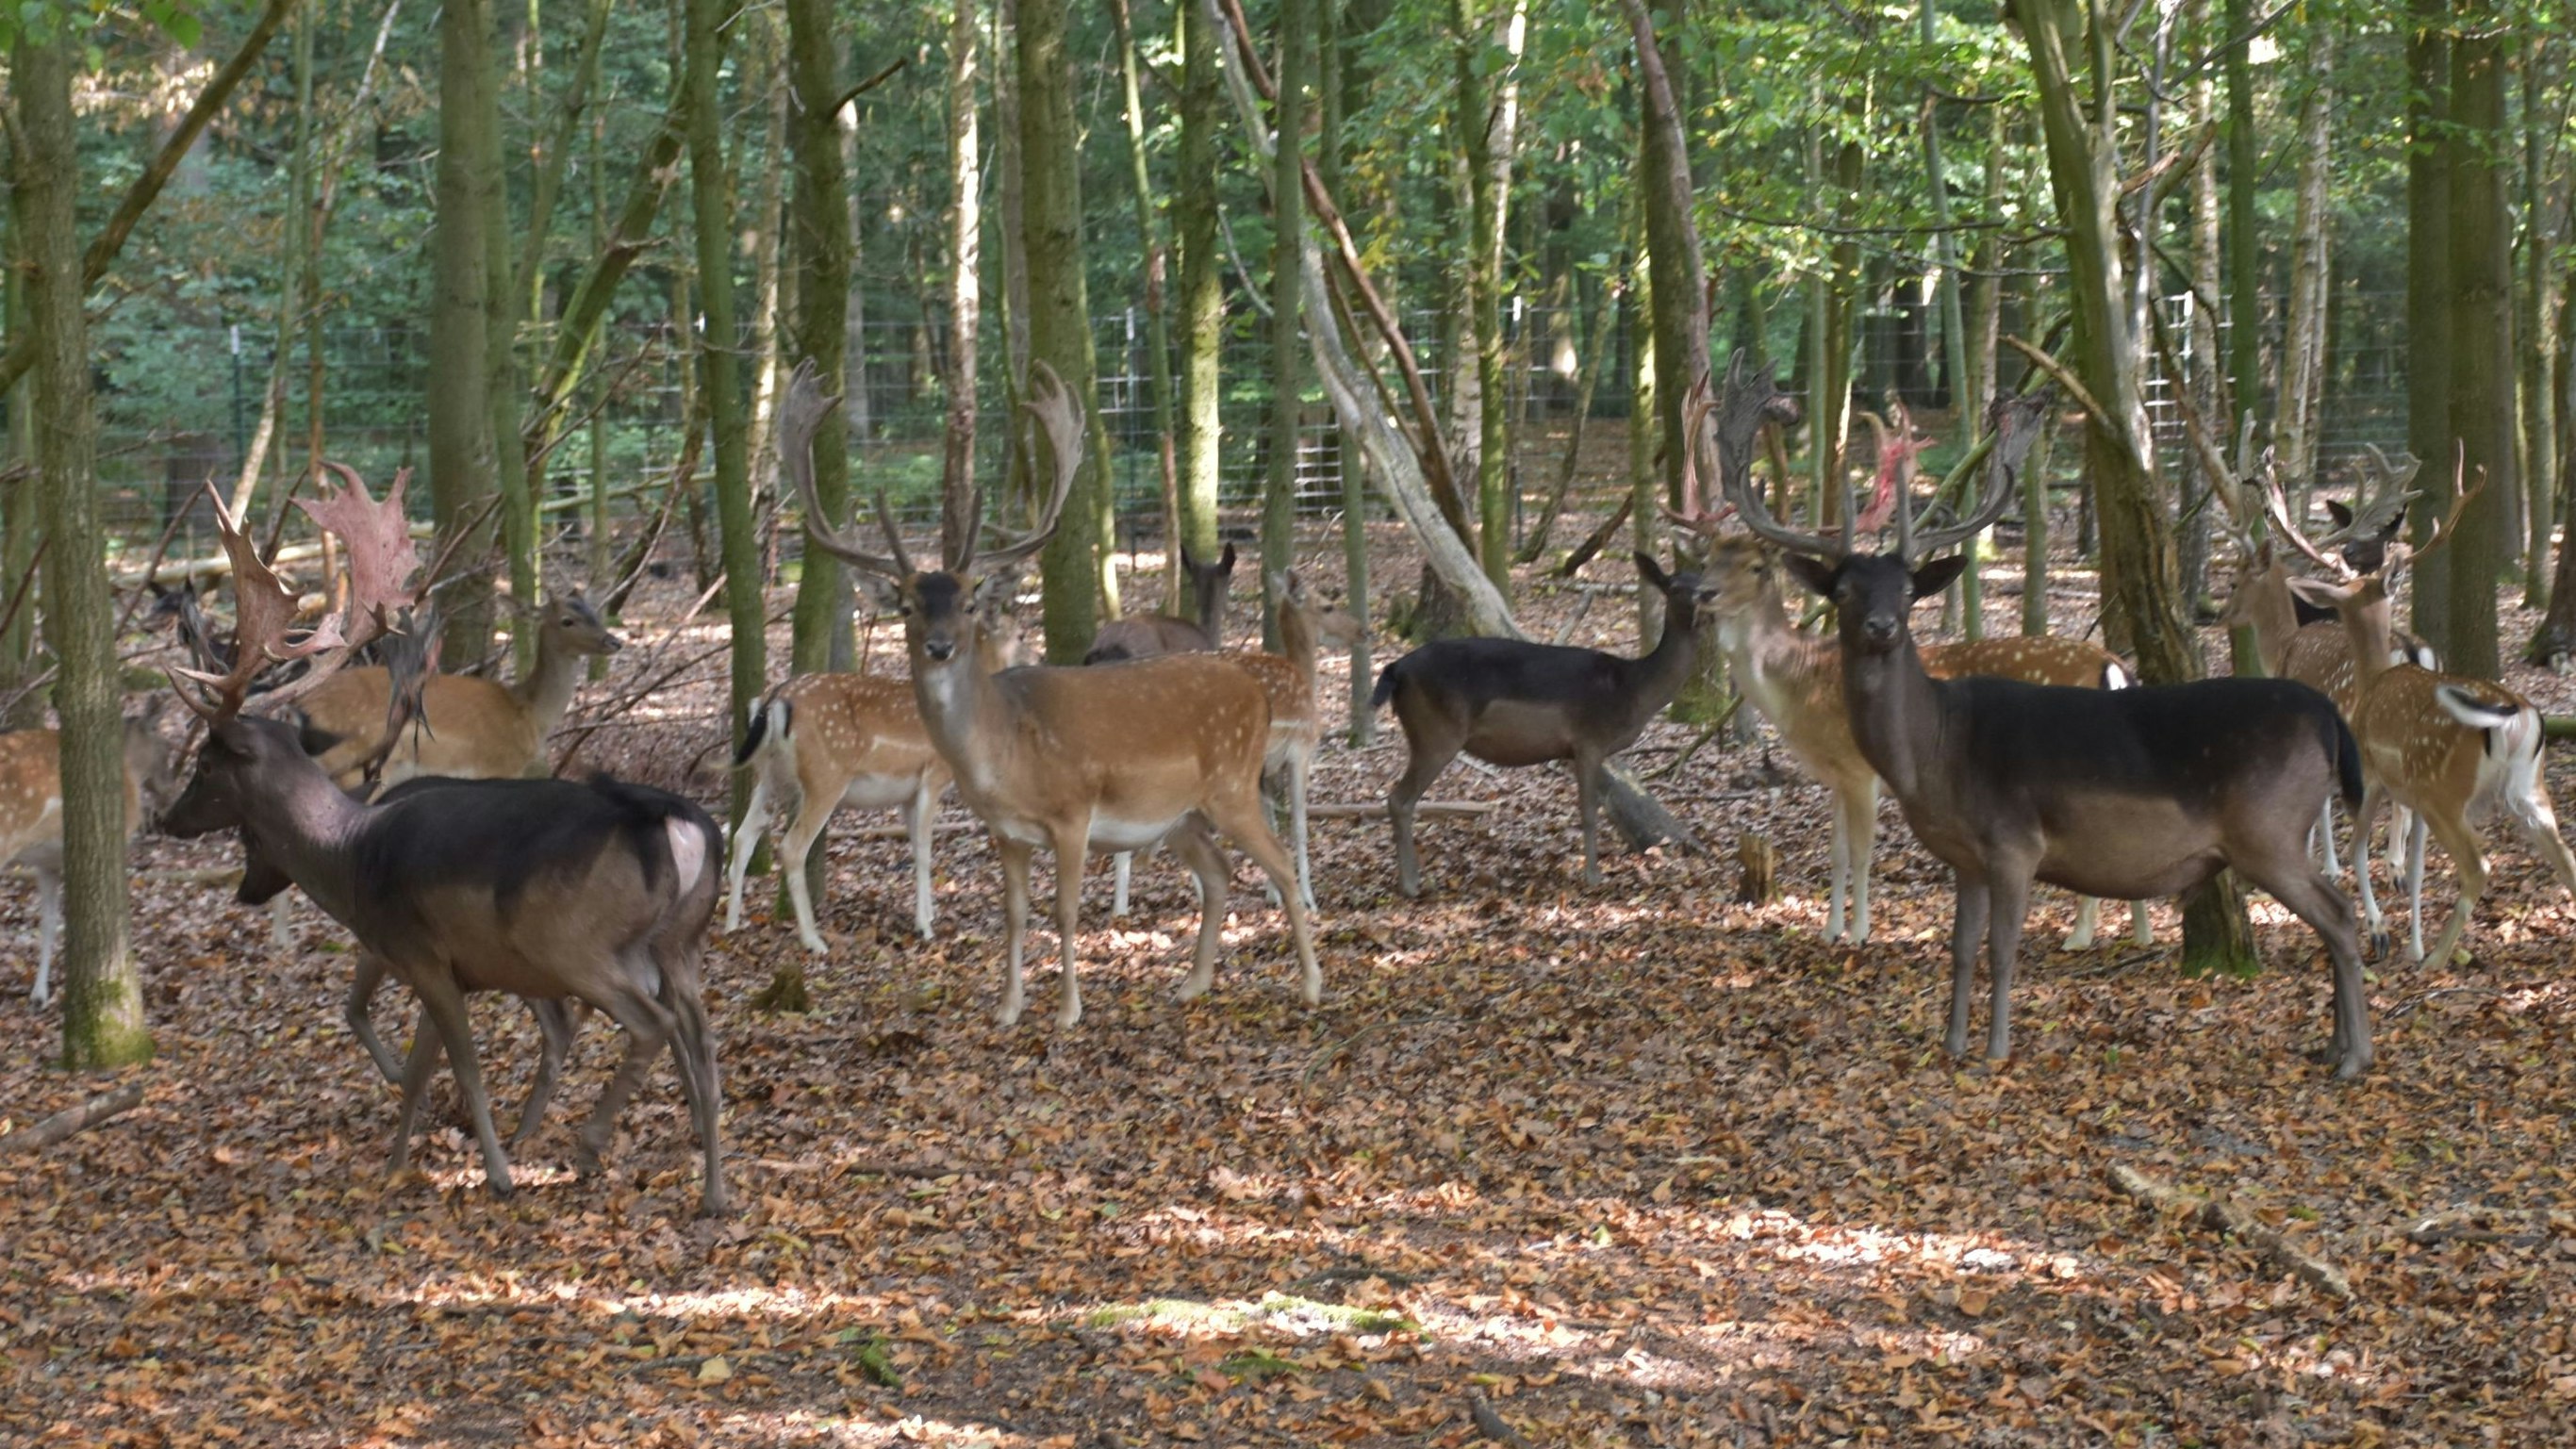 Sie gehören zum Wildpark wie das Kloster zum Burgwald: Rund 70 bis 80 Damhirsche leben im Tiergehege. Foto: Böckmann